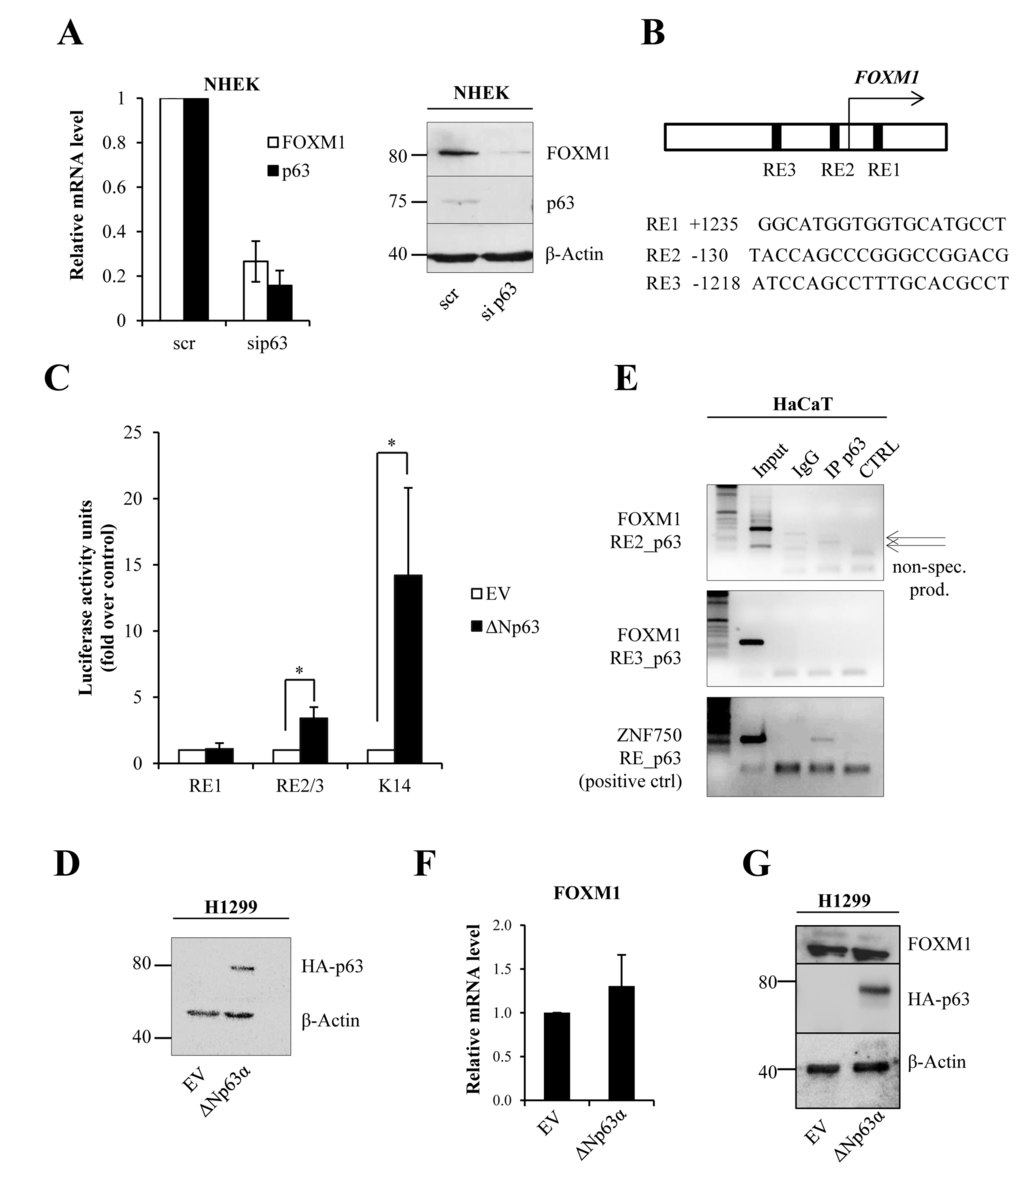 ΔNp63 indirectly regulates FOXM1 expression